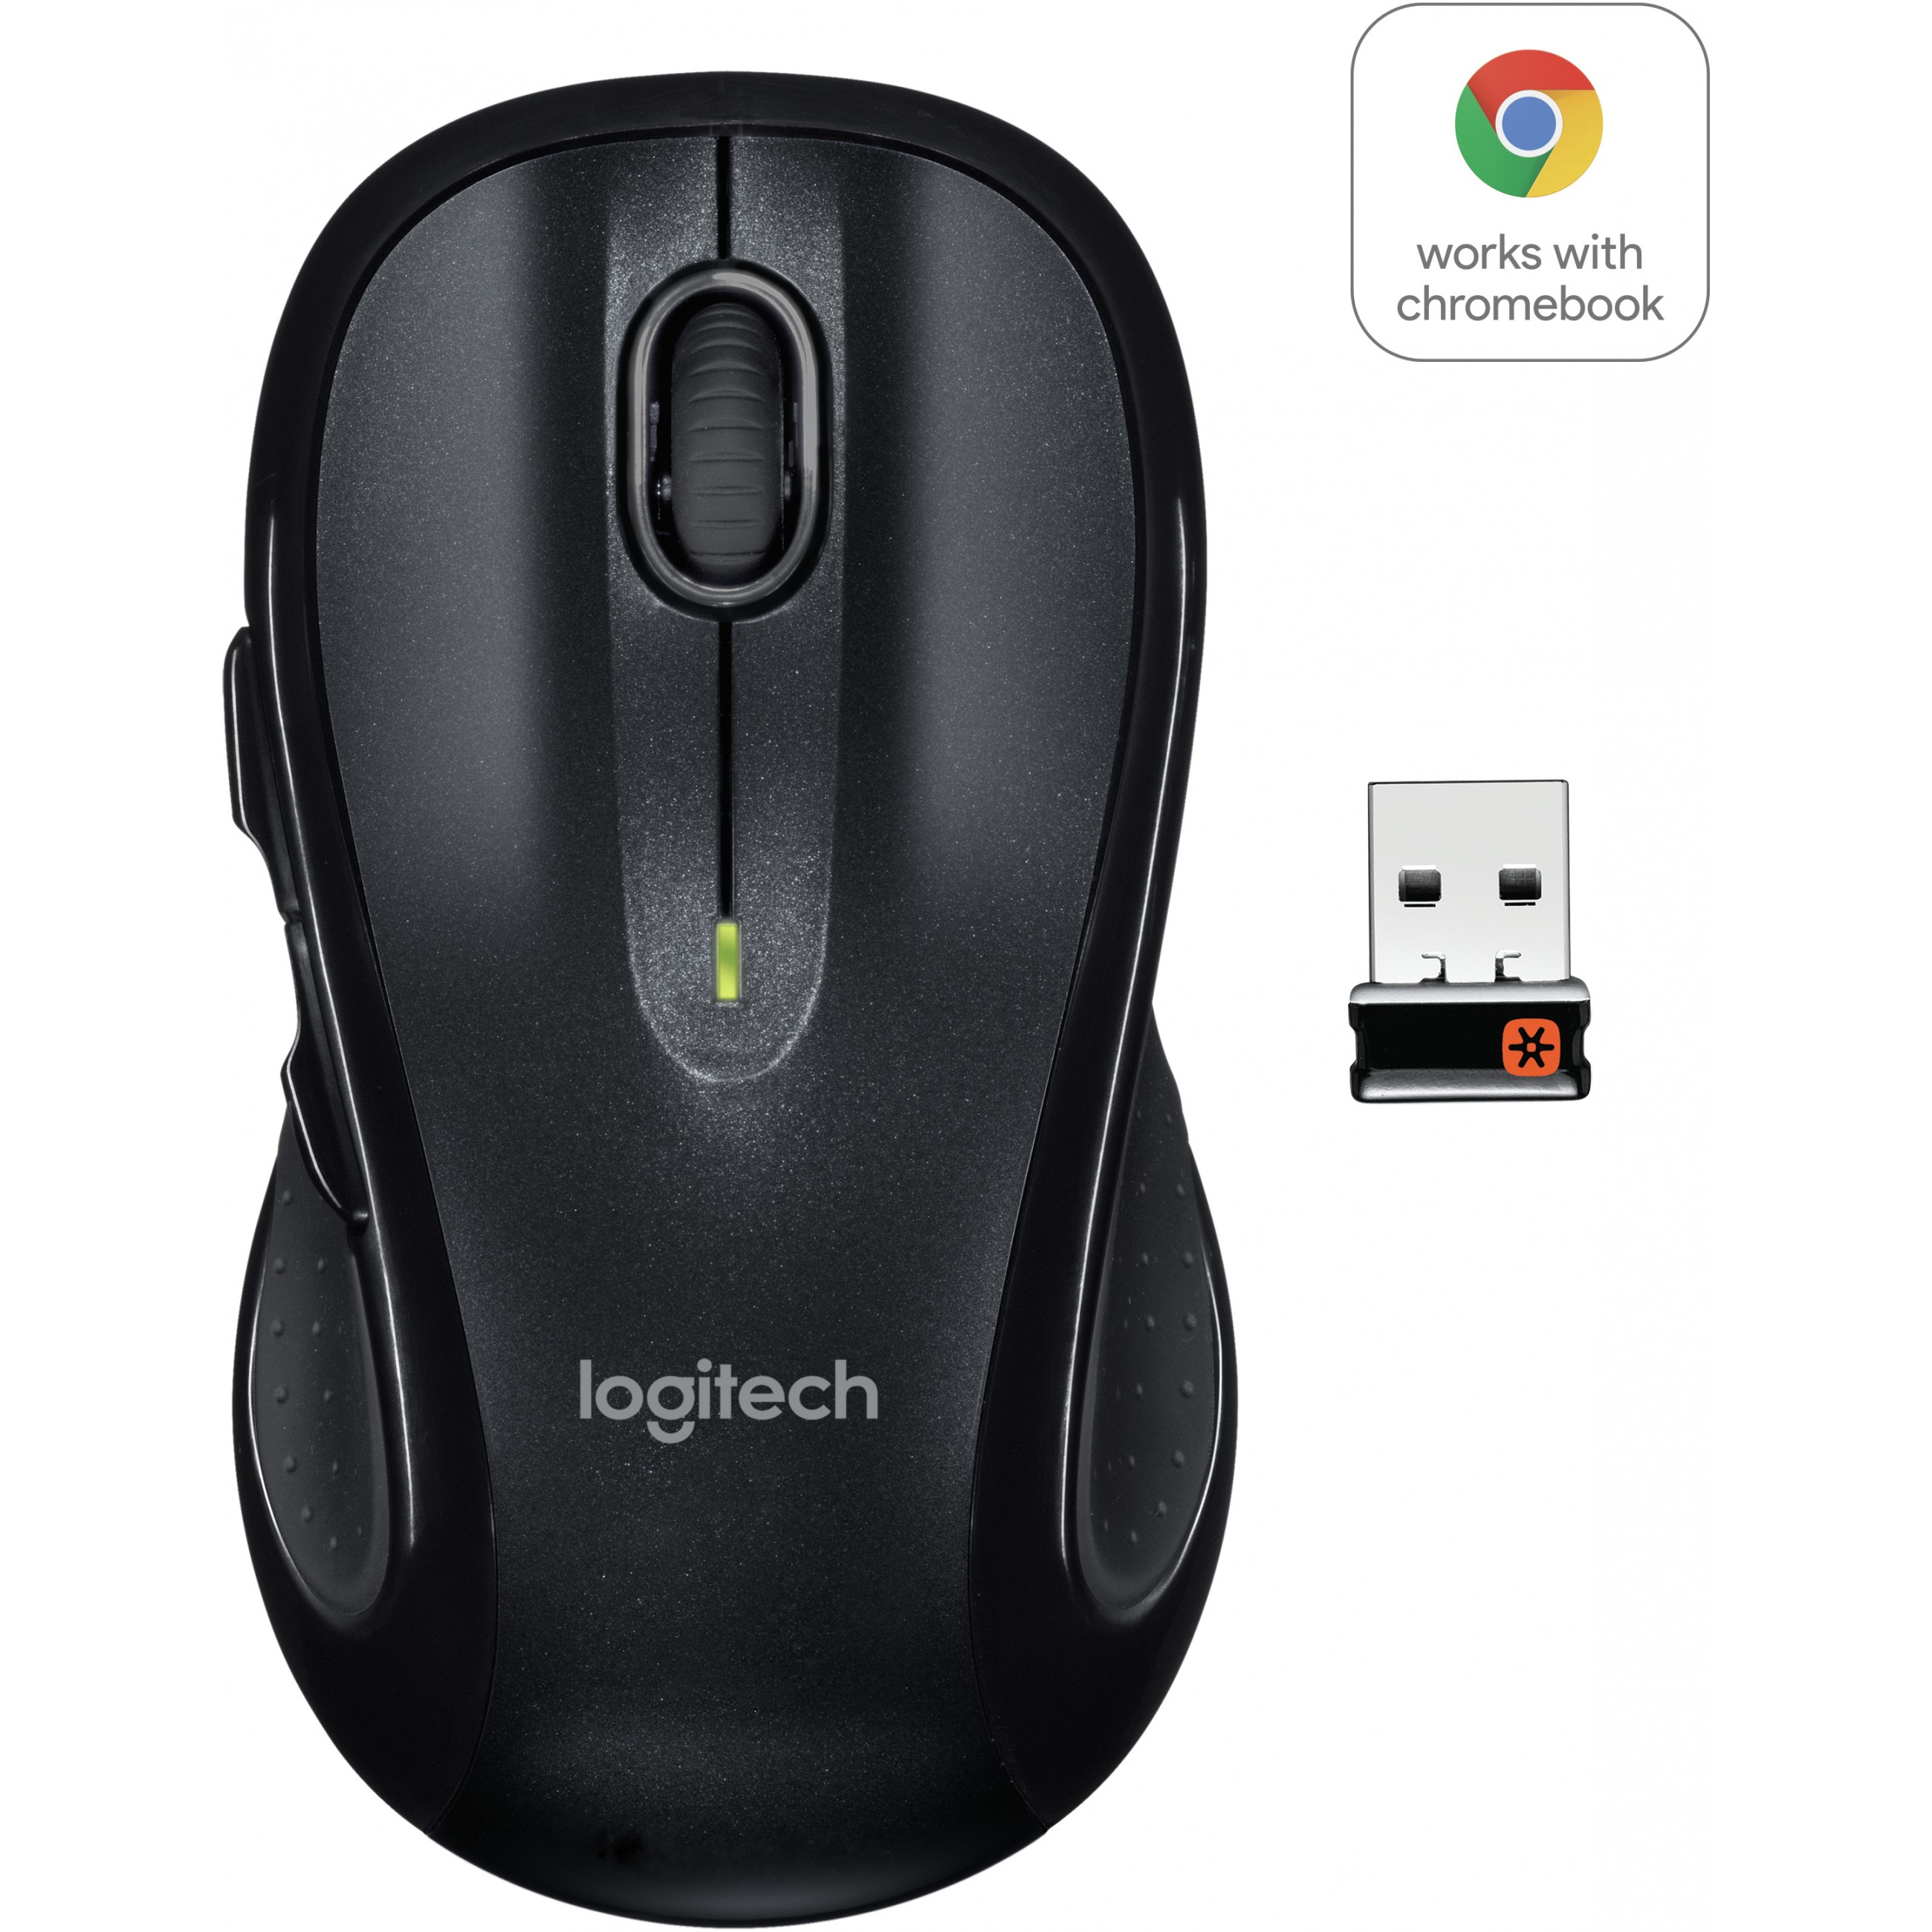 Logitech M510 mouse